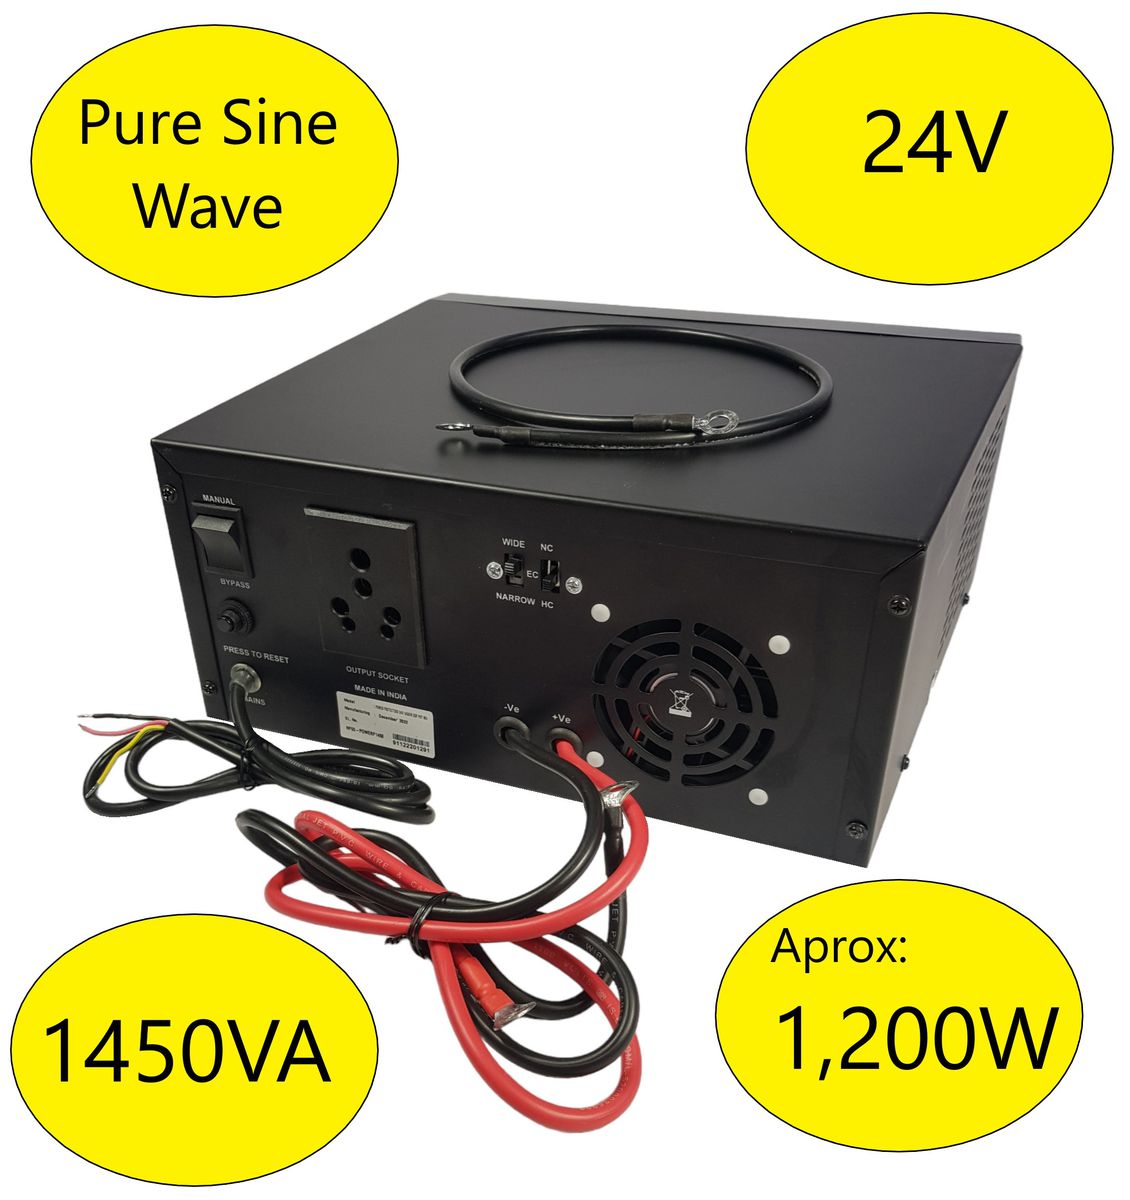 24V Pure Sine Inverter / UPS 1,450VA, 1,200W: Black